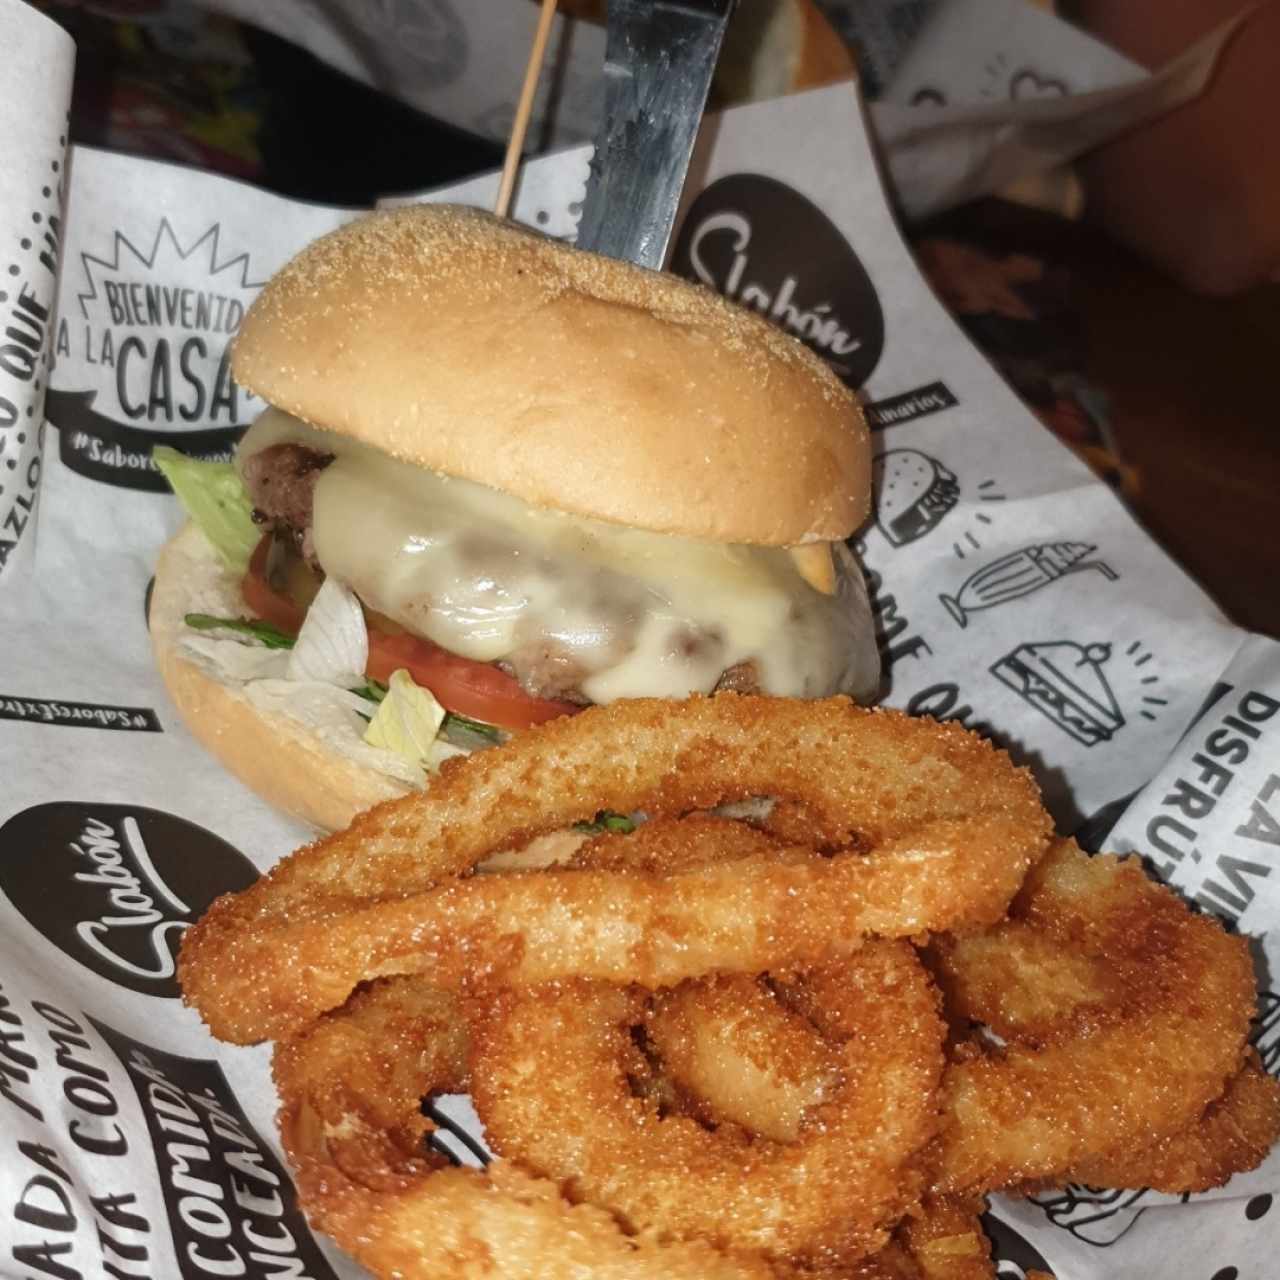 Retro Burger clásica 